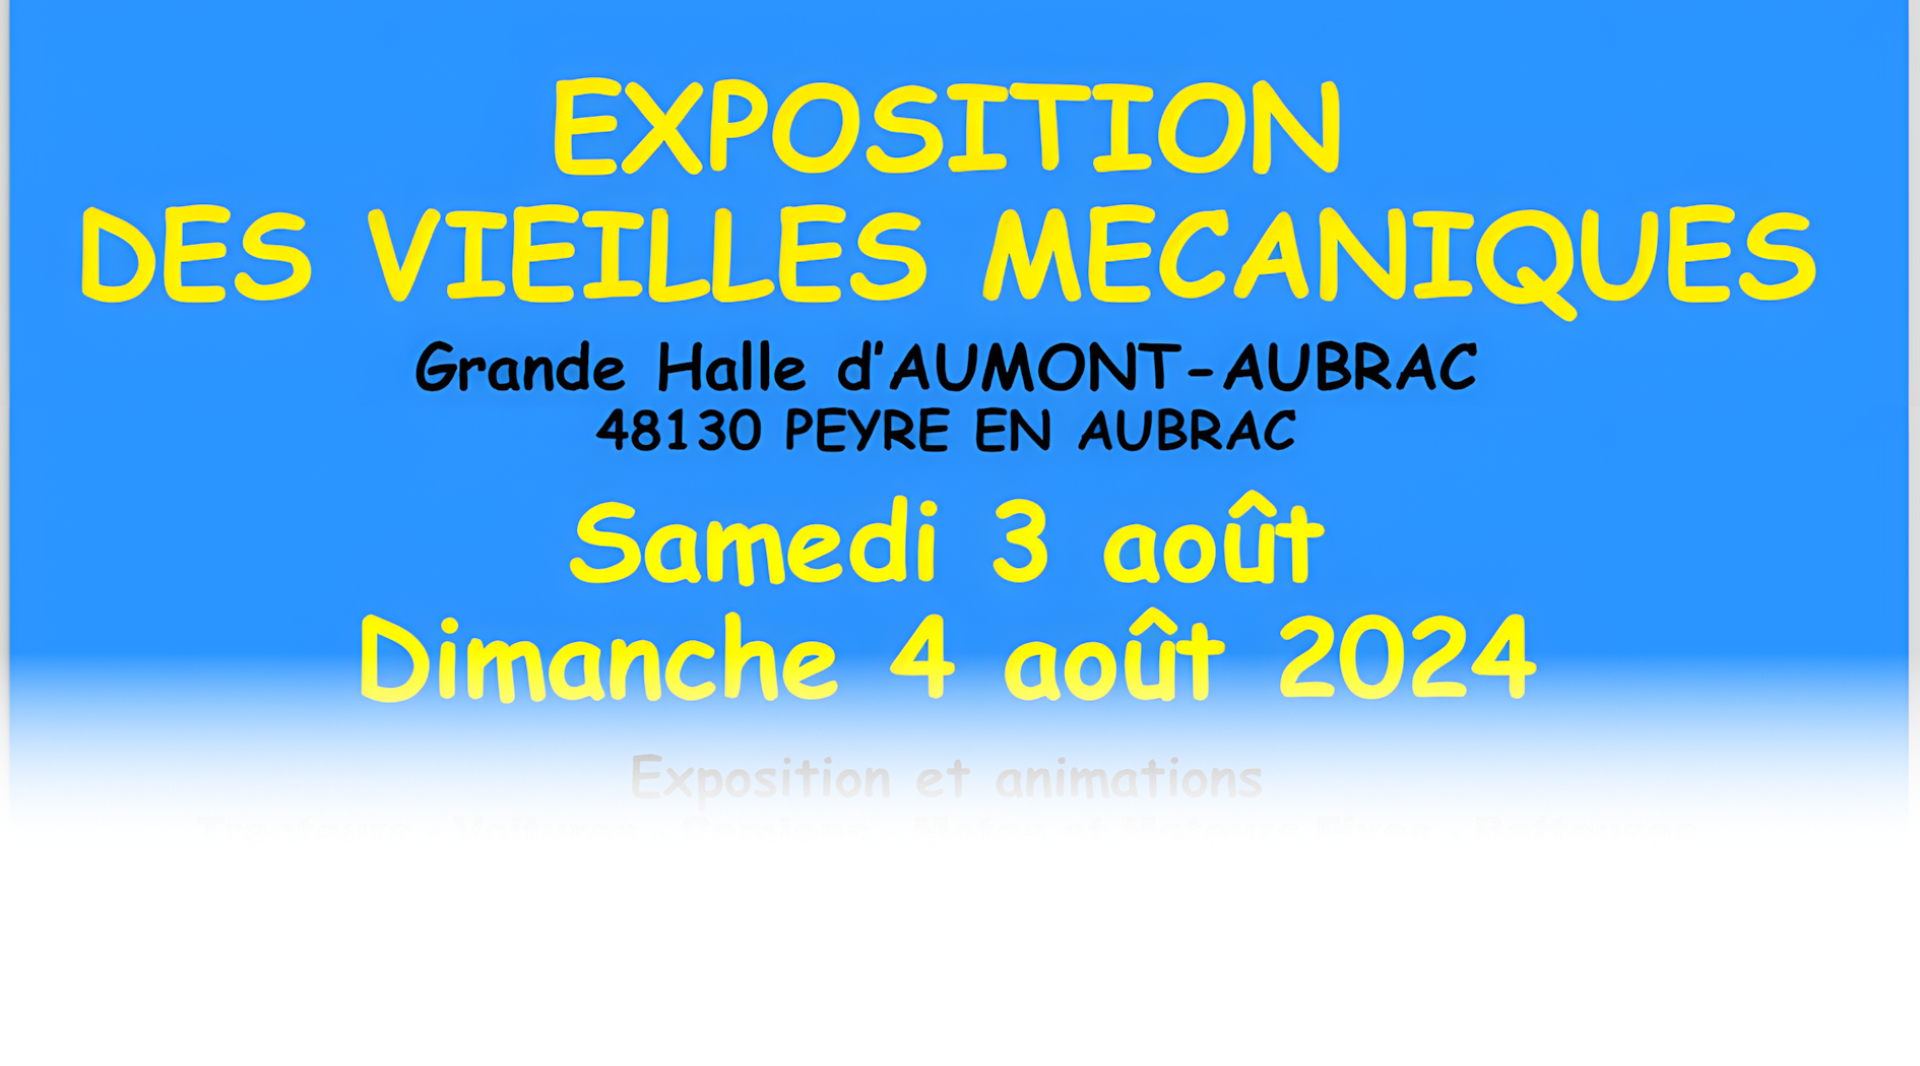 Exposition vieilles mécaniques à Aumont-Aubrac - Commune de Peyre en Aubrac en Lozère